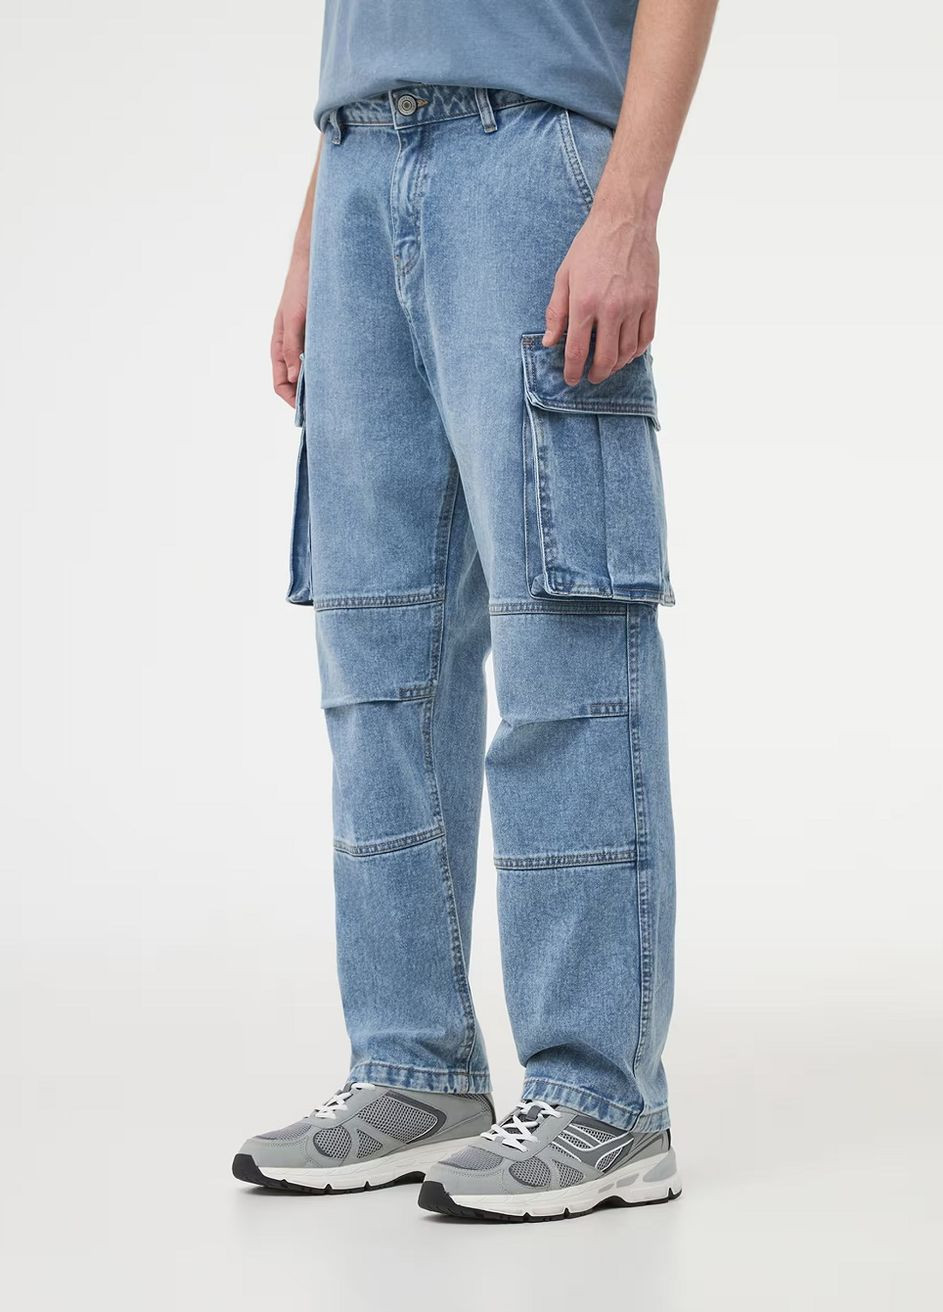 Синие демисезонные джинсы чел Terranova